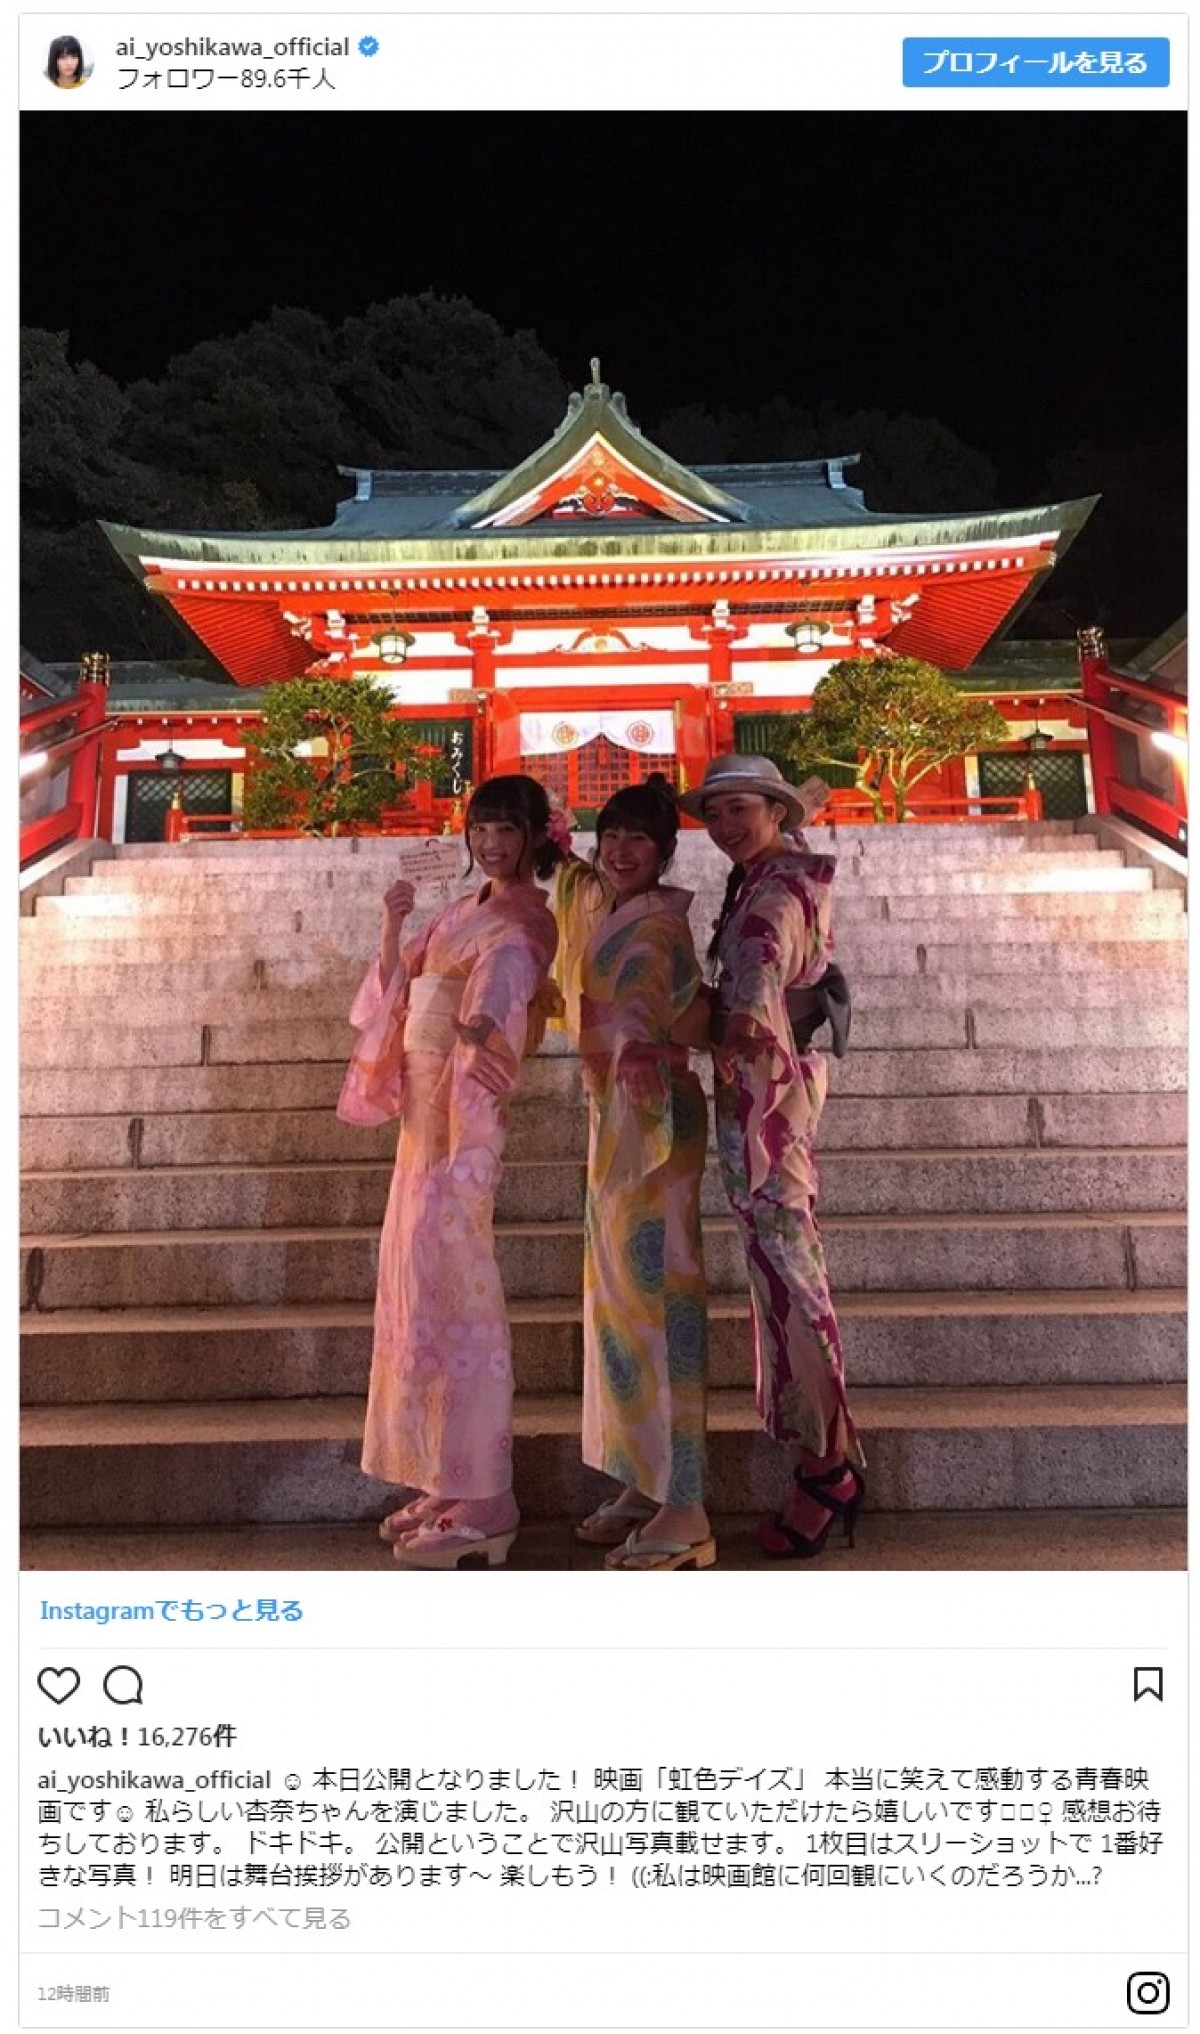 『虹色デイズ』 JK美少女3人の青春感たっぷりショットにファン歓喜